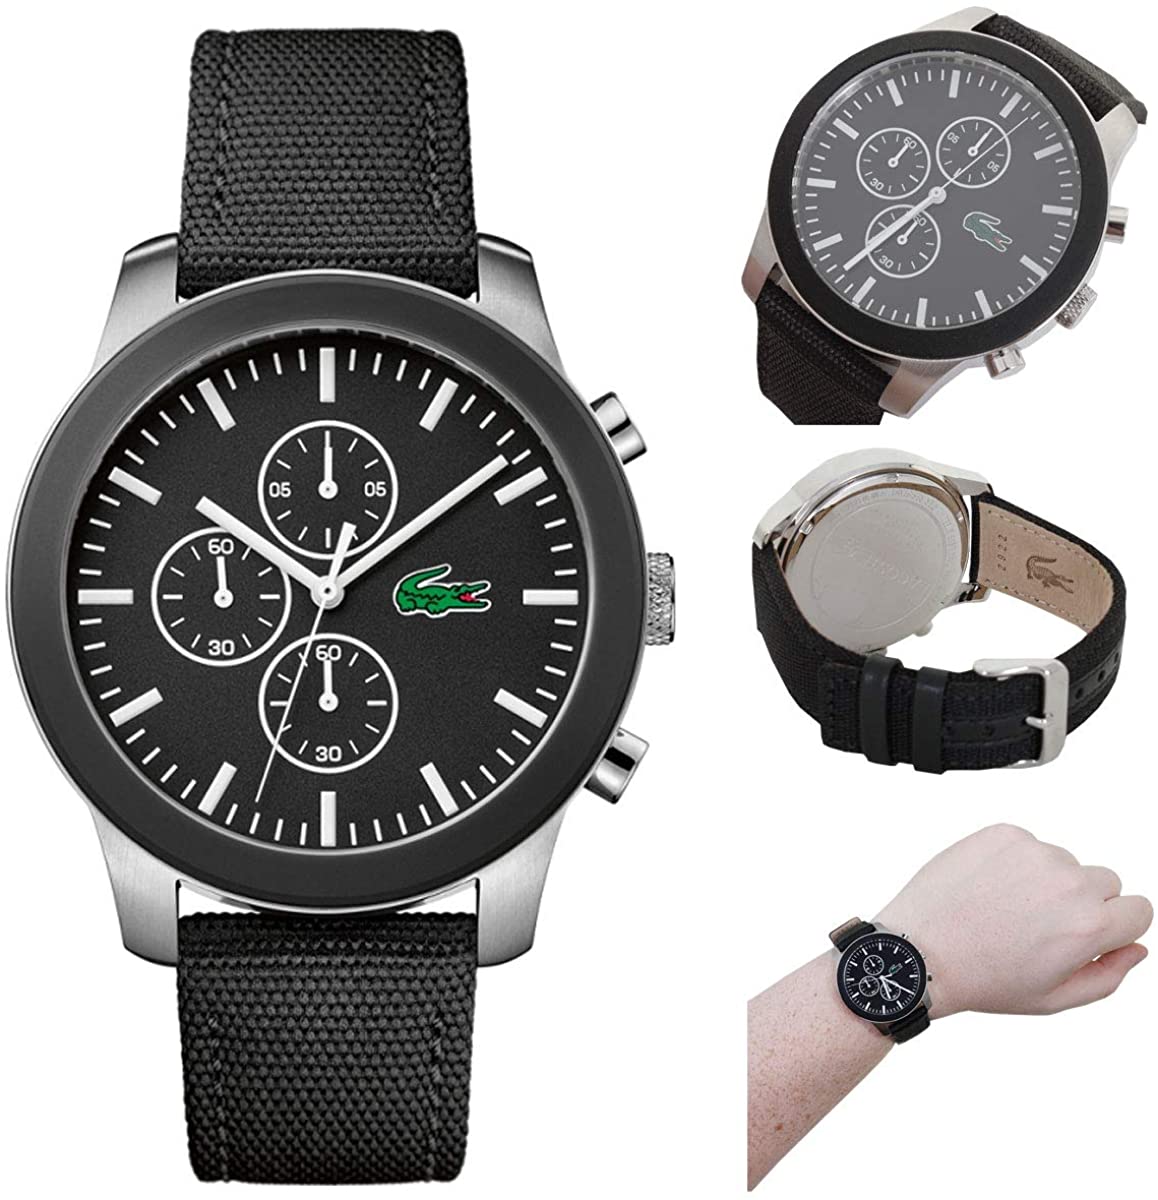 Lacoste Unisex-Adult Chronograph Quartz Watch with Textile Strap 2010950